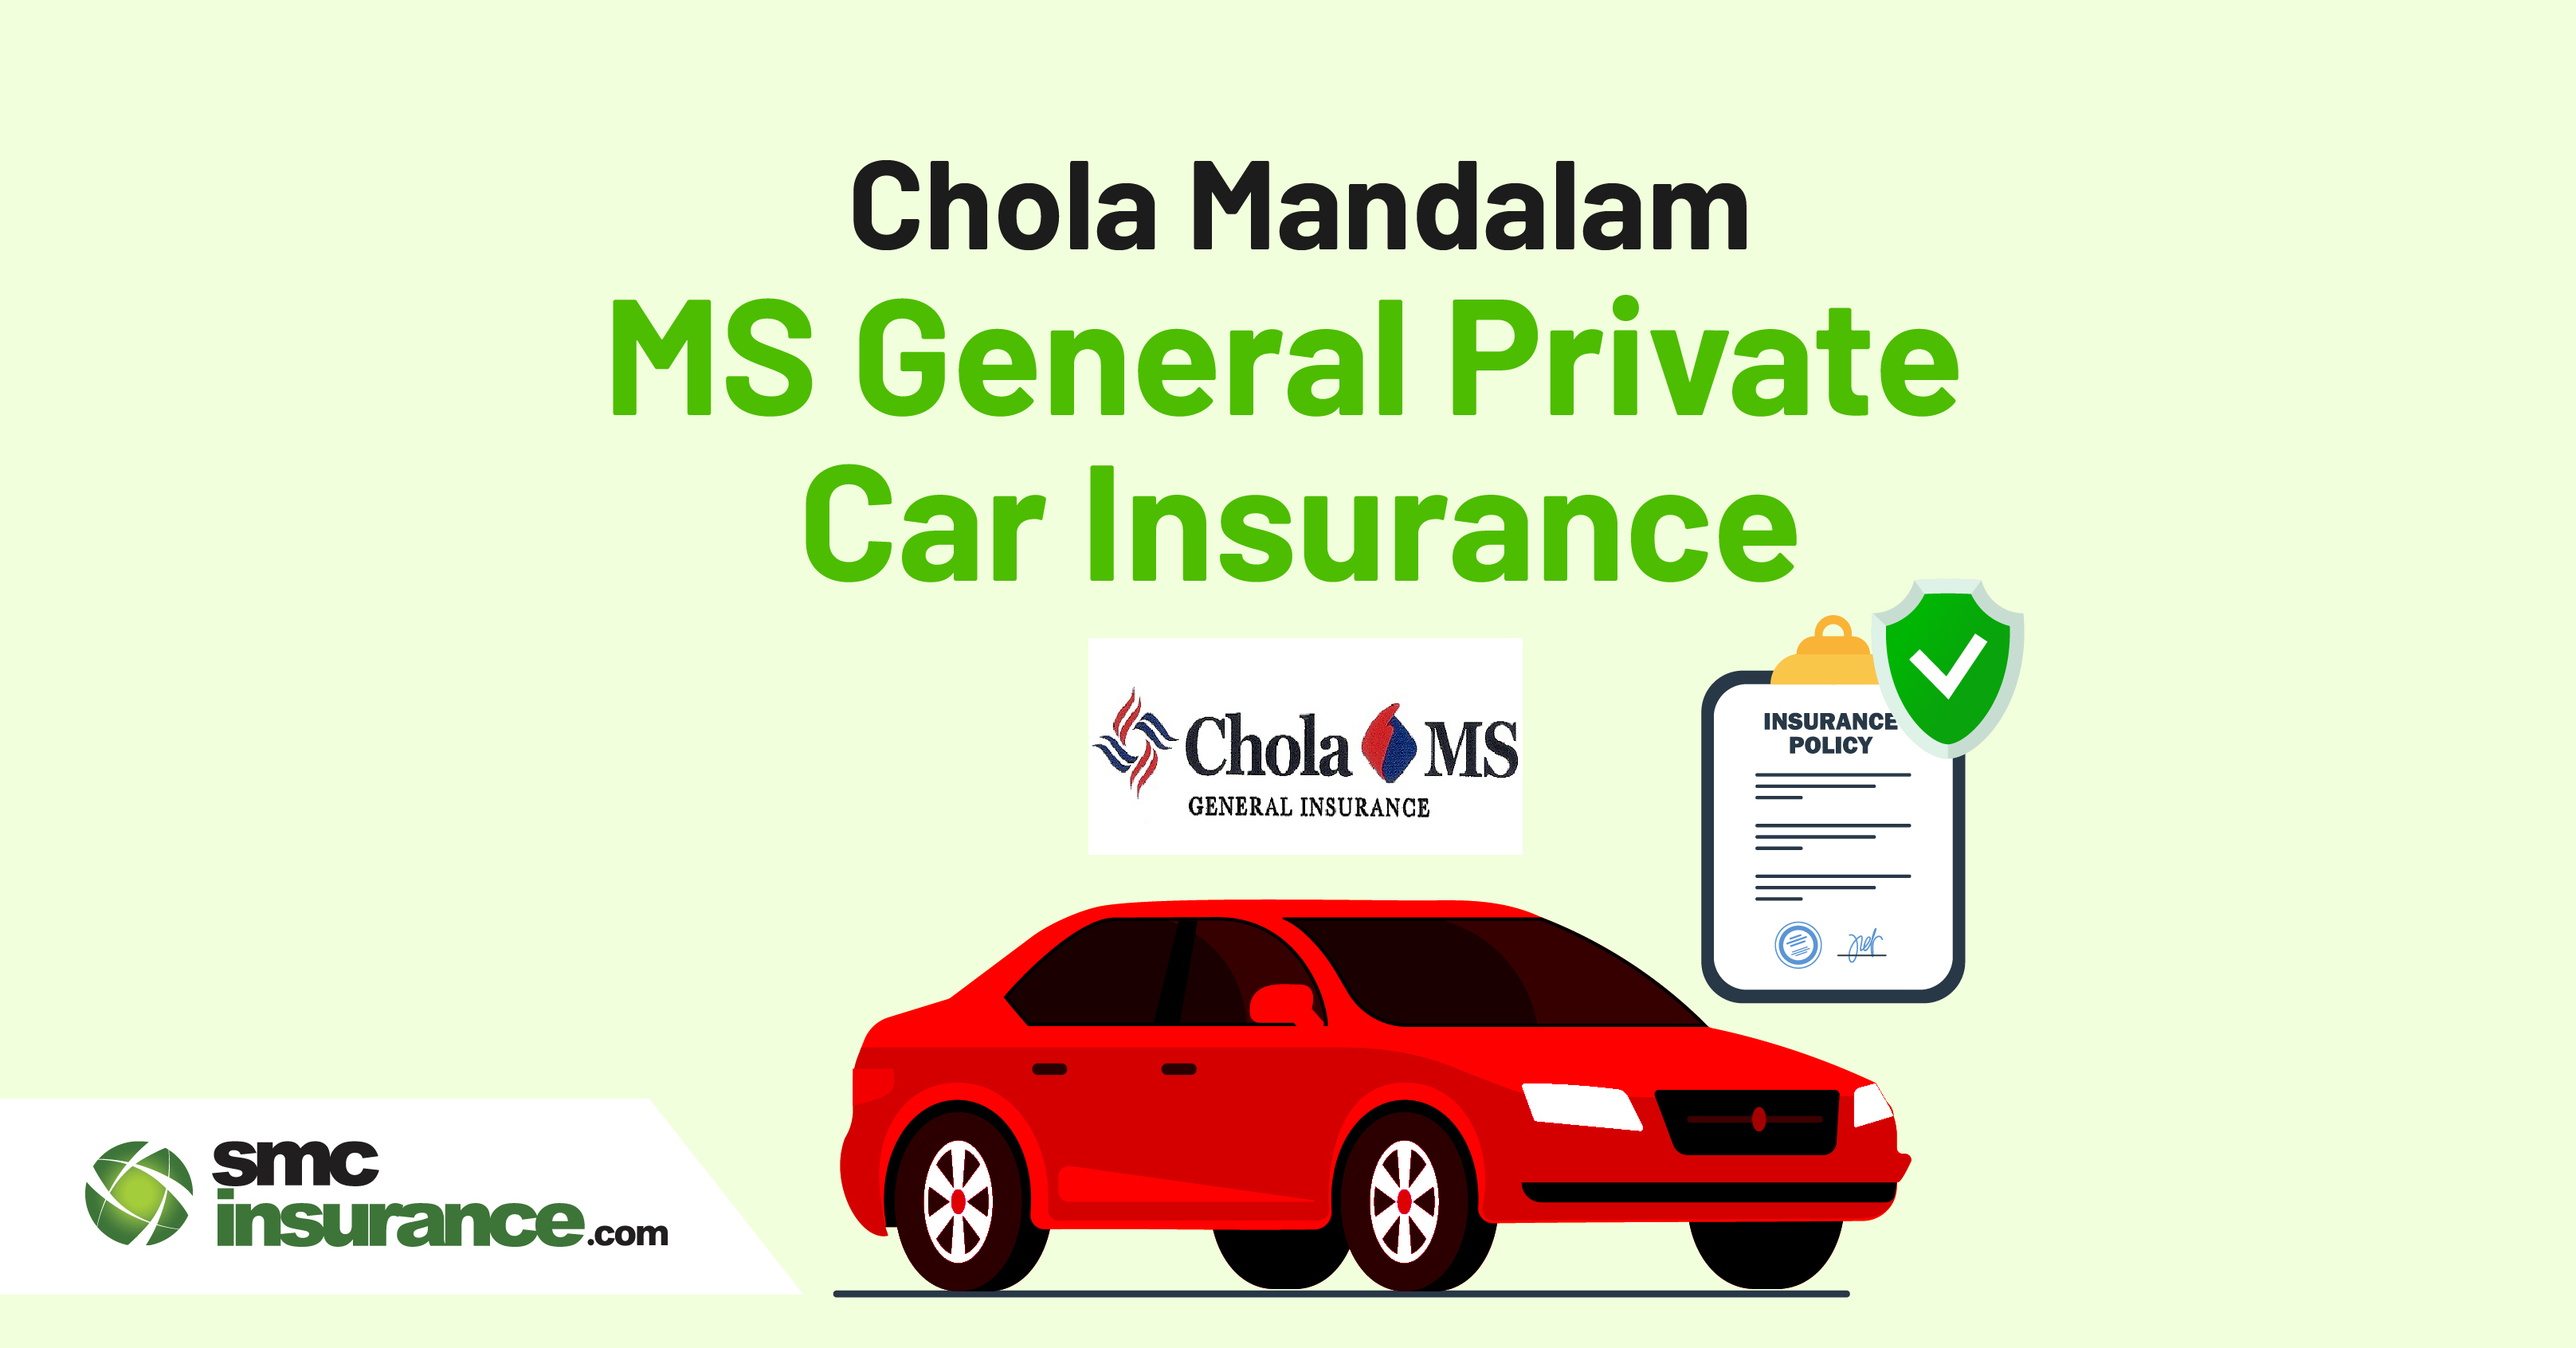 Chola Mandalam MS General Private Car Insurance